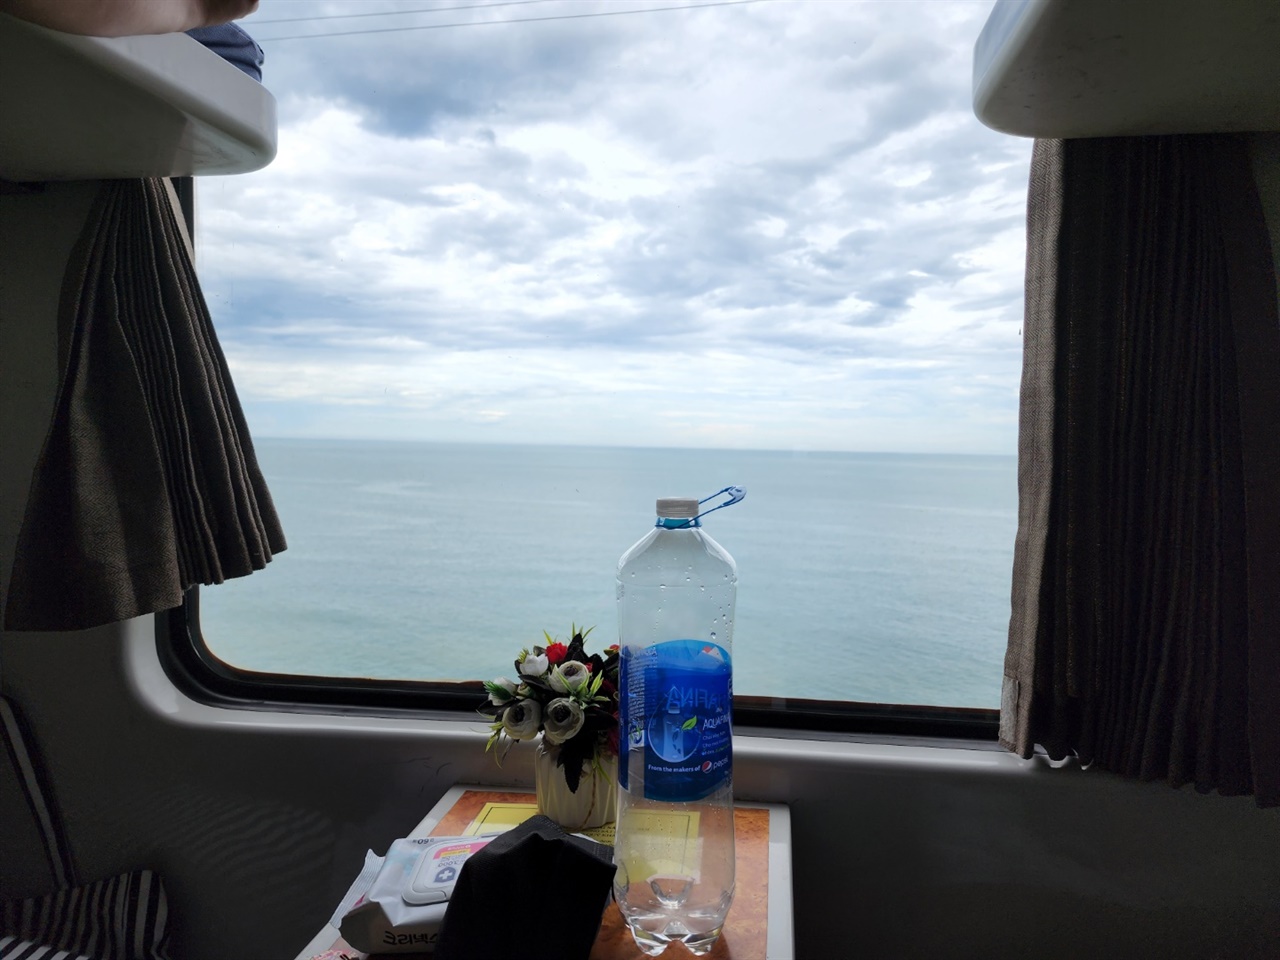 기차여행의 즐거움 중 하나는 창밖을 바라만 보아도 온갖 풍경이 스쳐지나간다는 것이다.